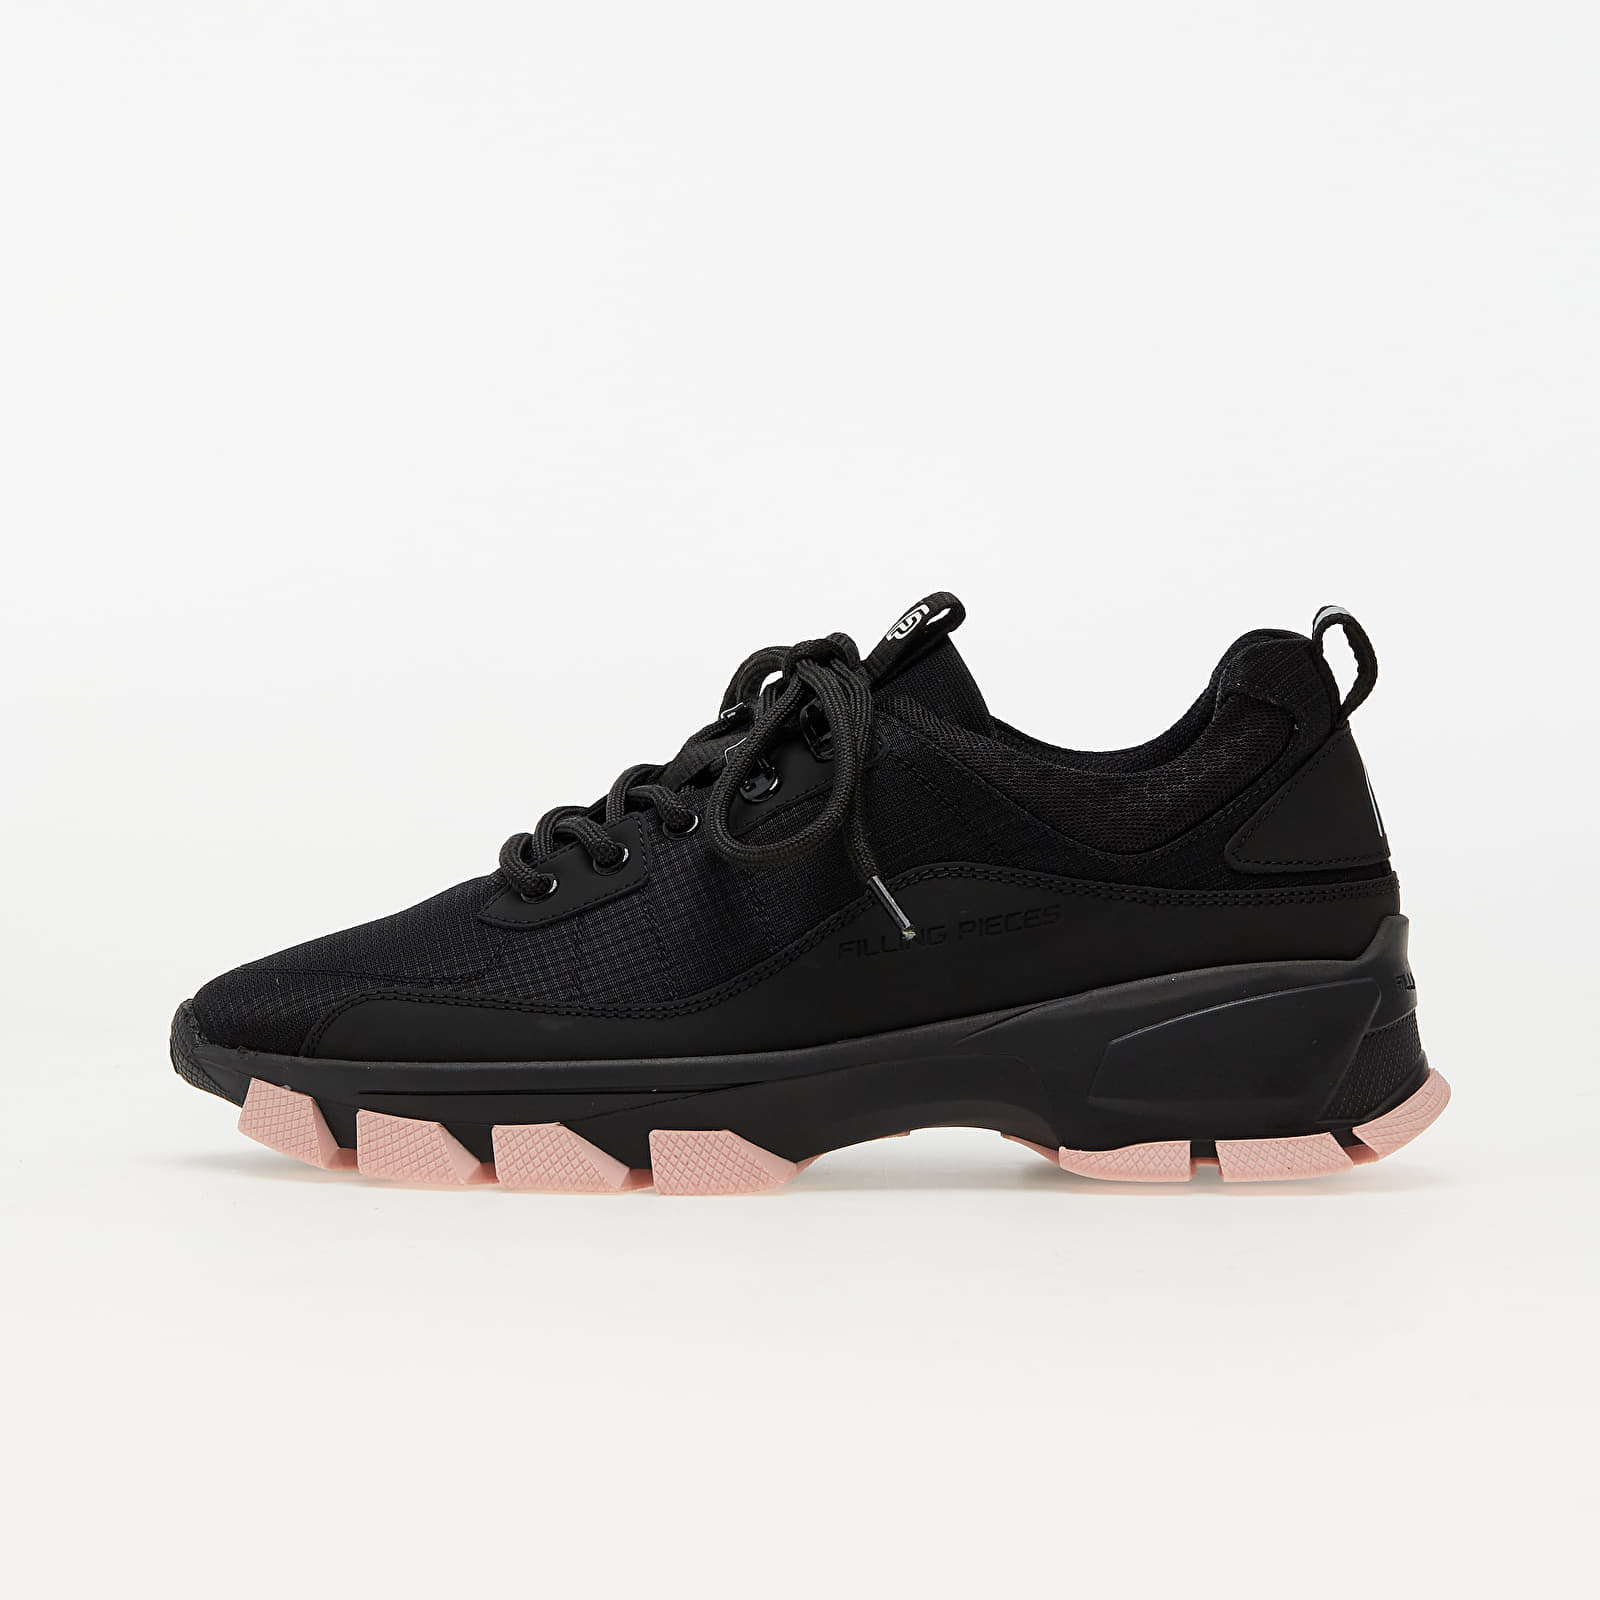 Men's shoes Filling Pieces Lux Radar Rubberized Black / Pink